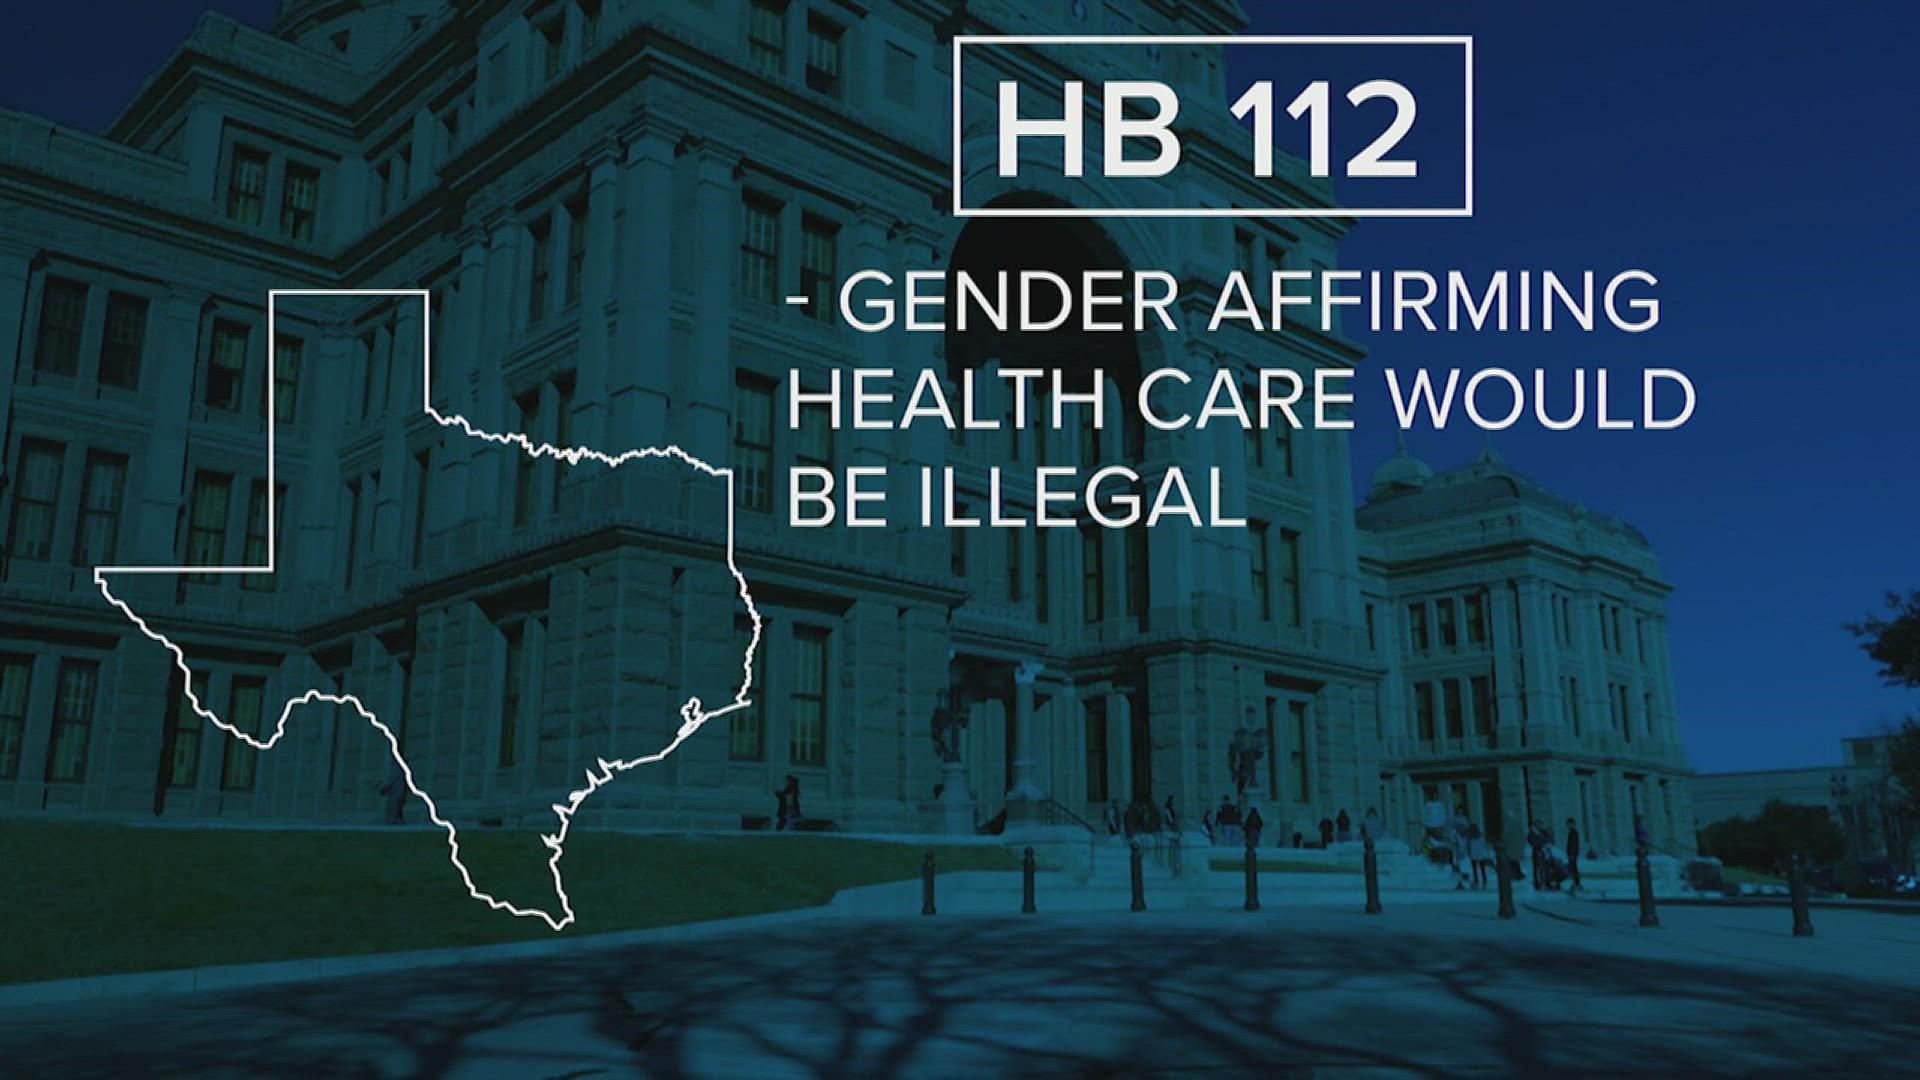 One bill would criminalize gender affirming health care.